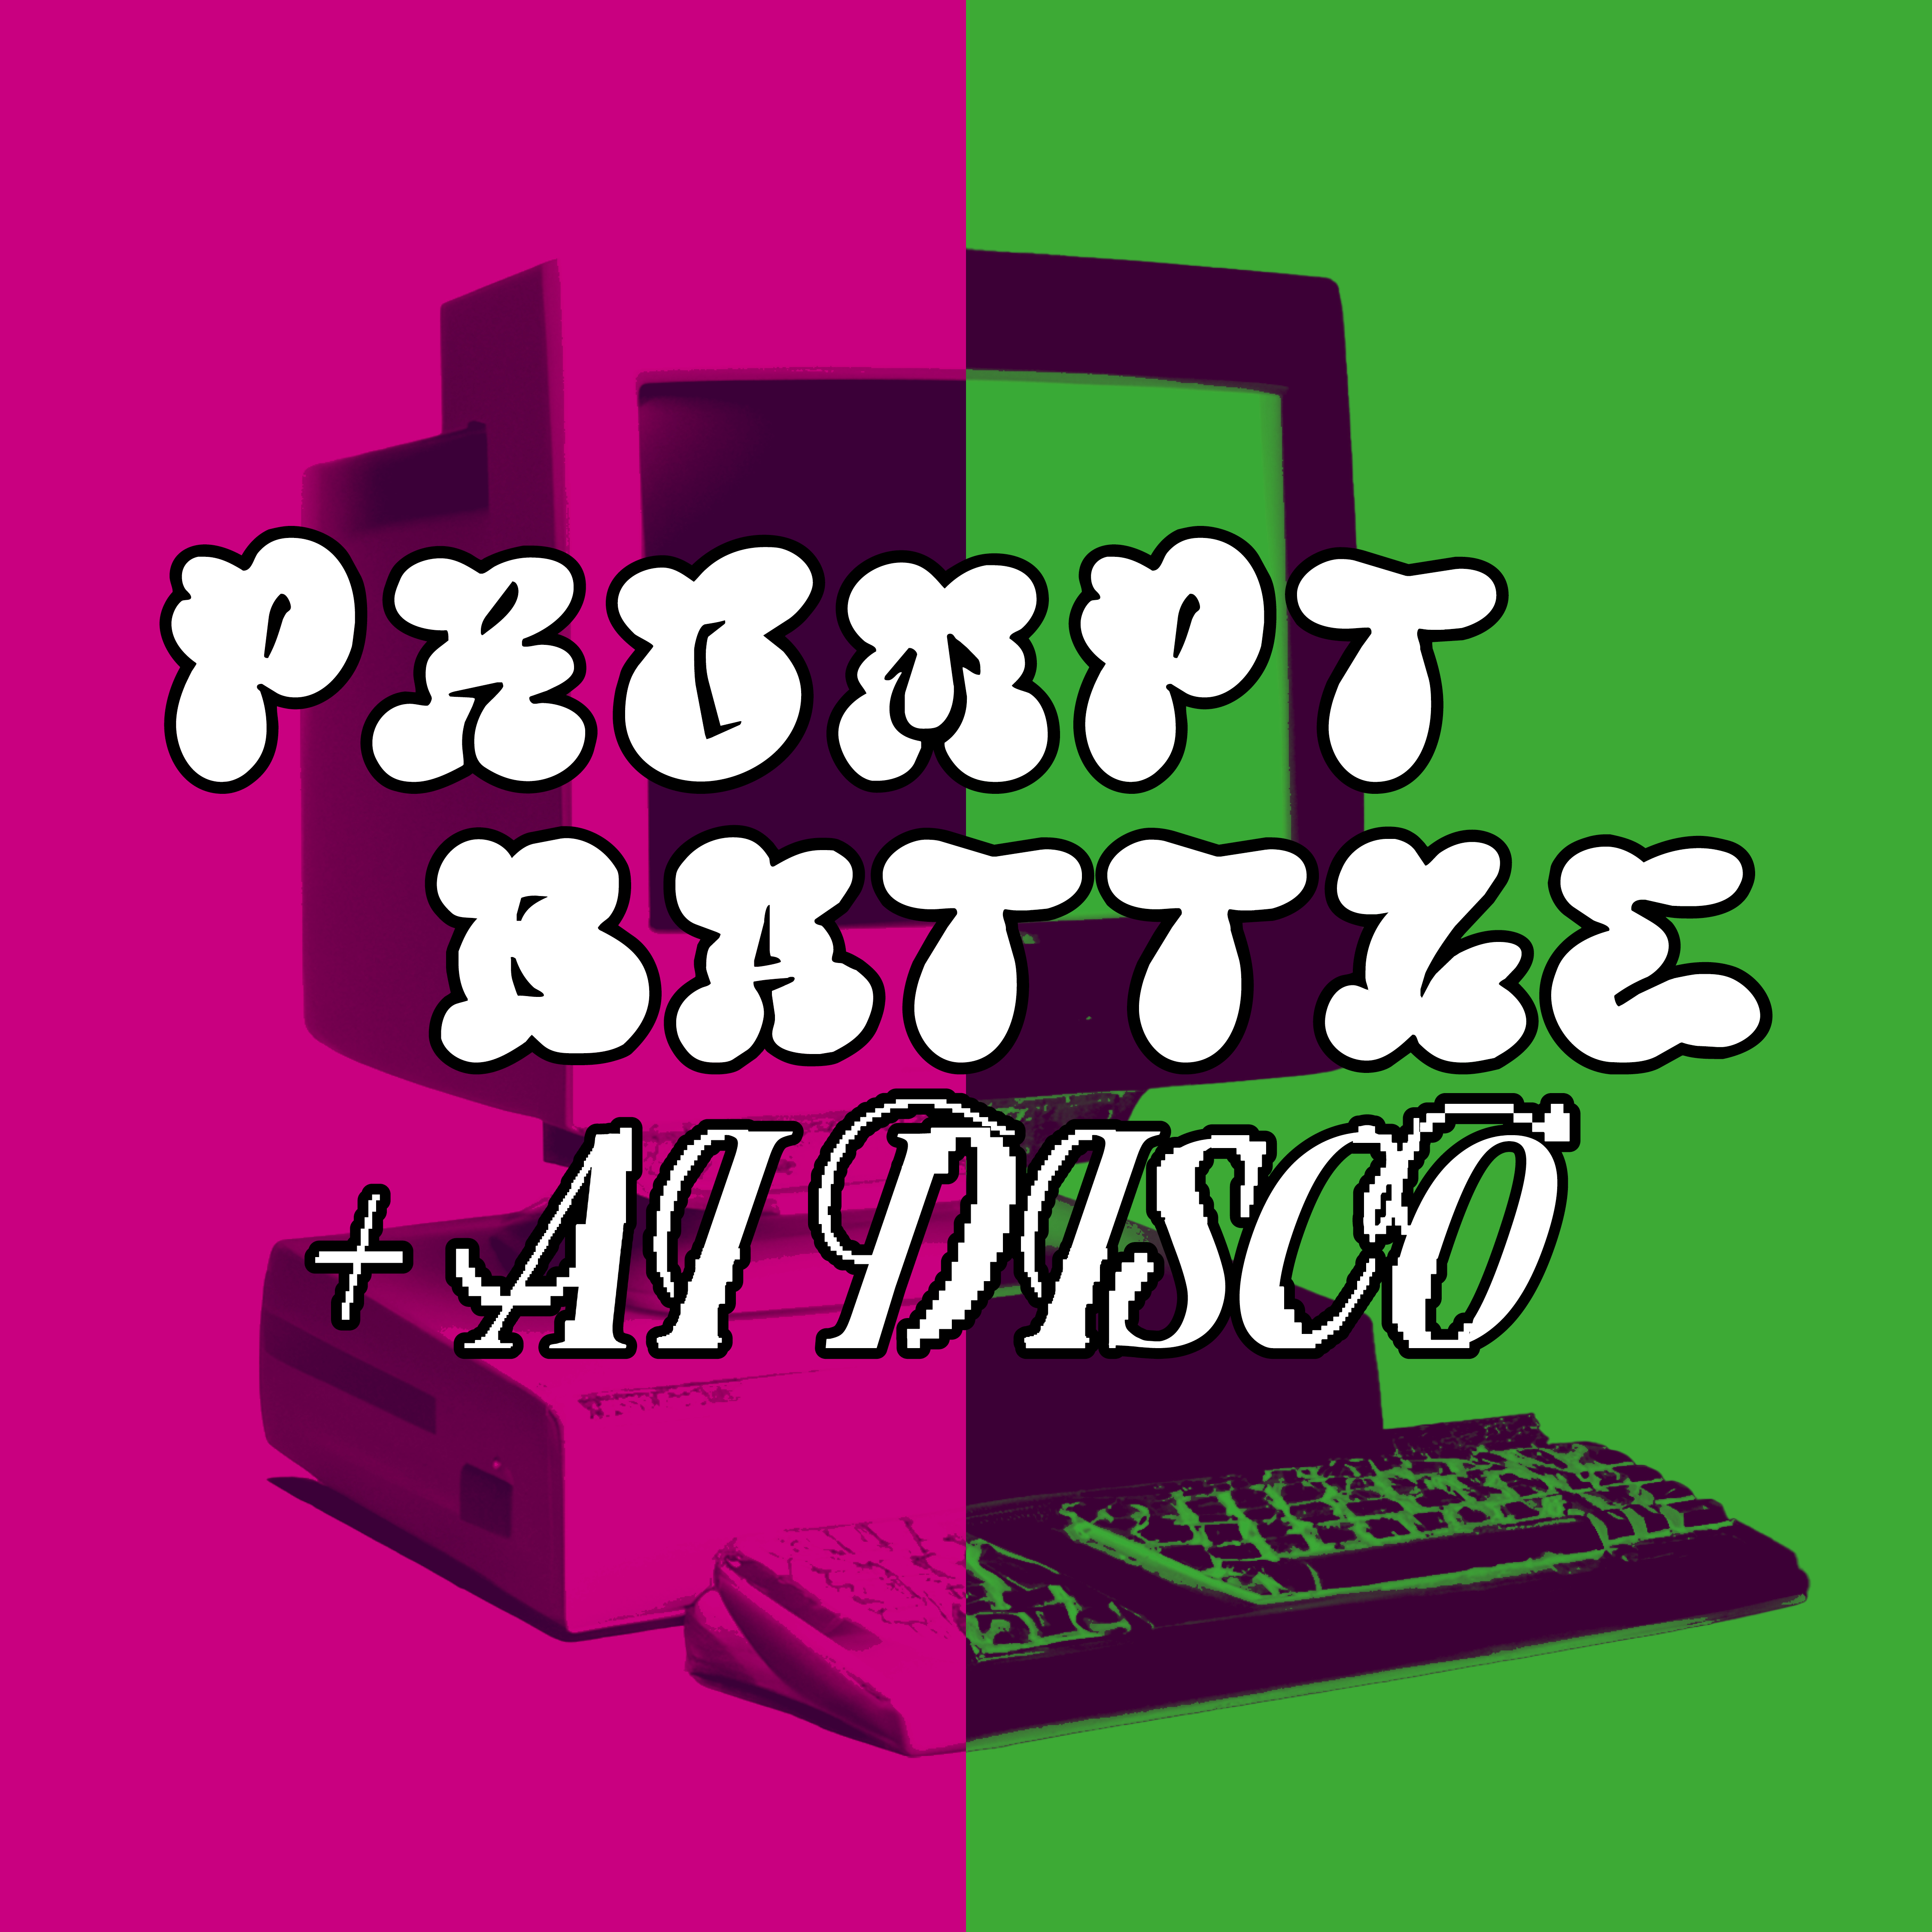 Pink-Grüner Hintergrund mit altem PC und Schrift "Prompt Battle"